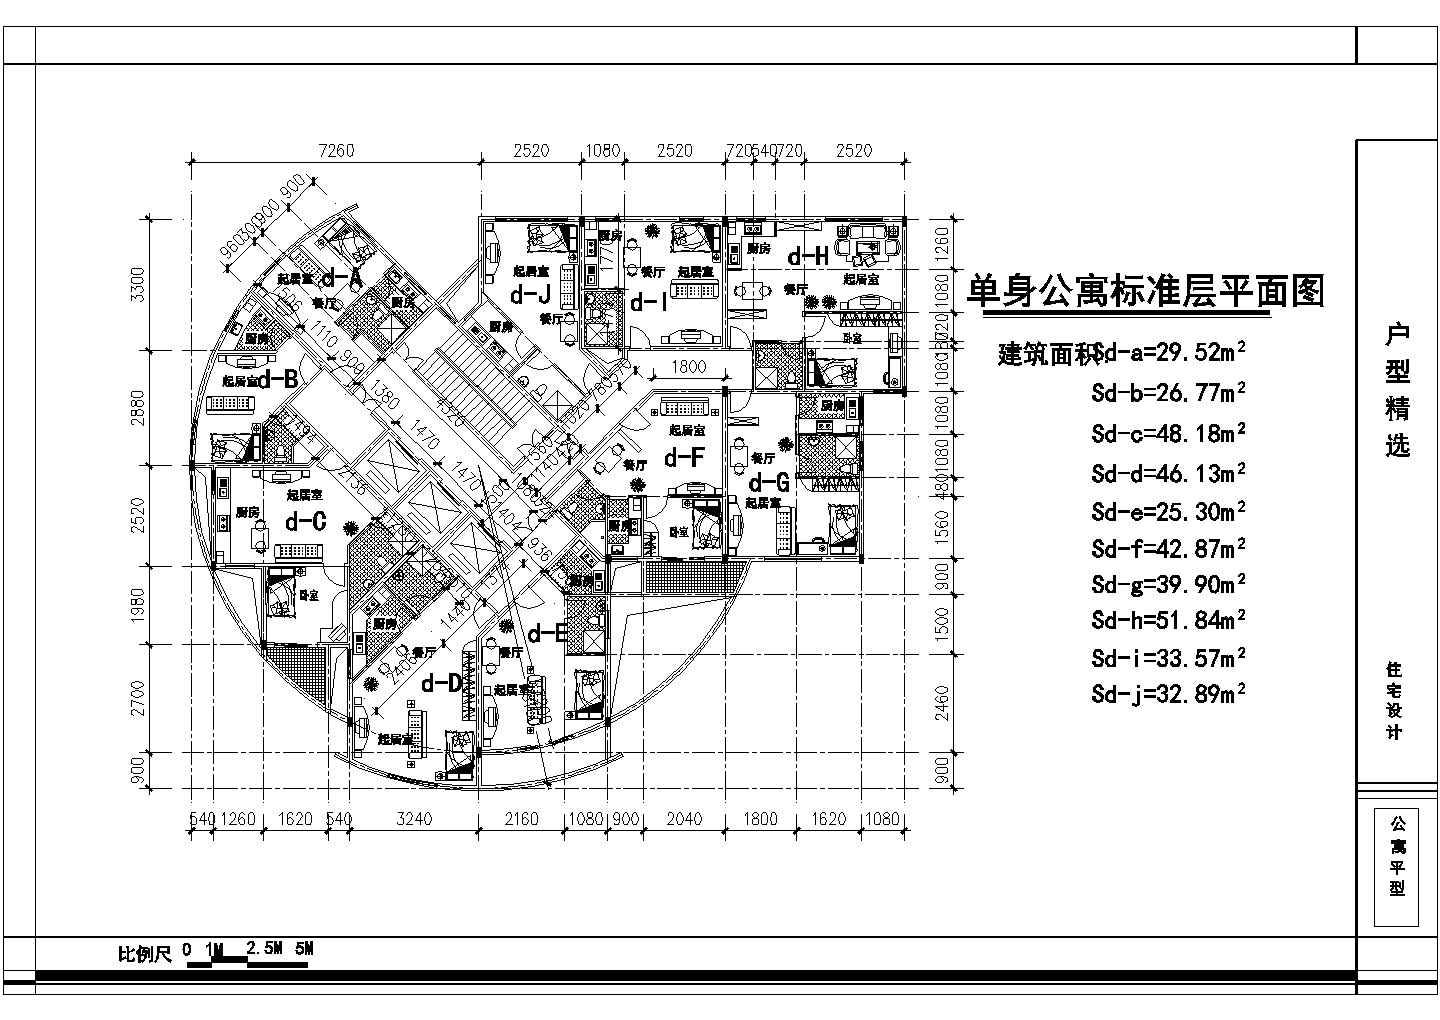 1楼3电梯10户单身公寓户型设计图【每户面积25.3至51.84平米】